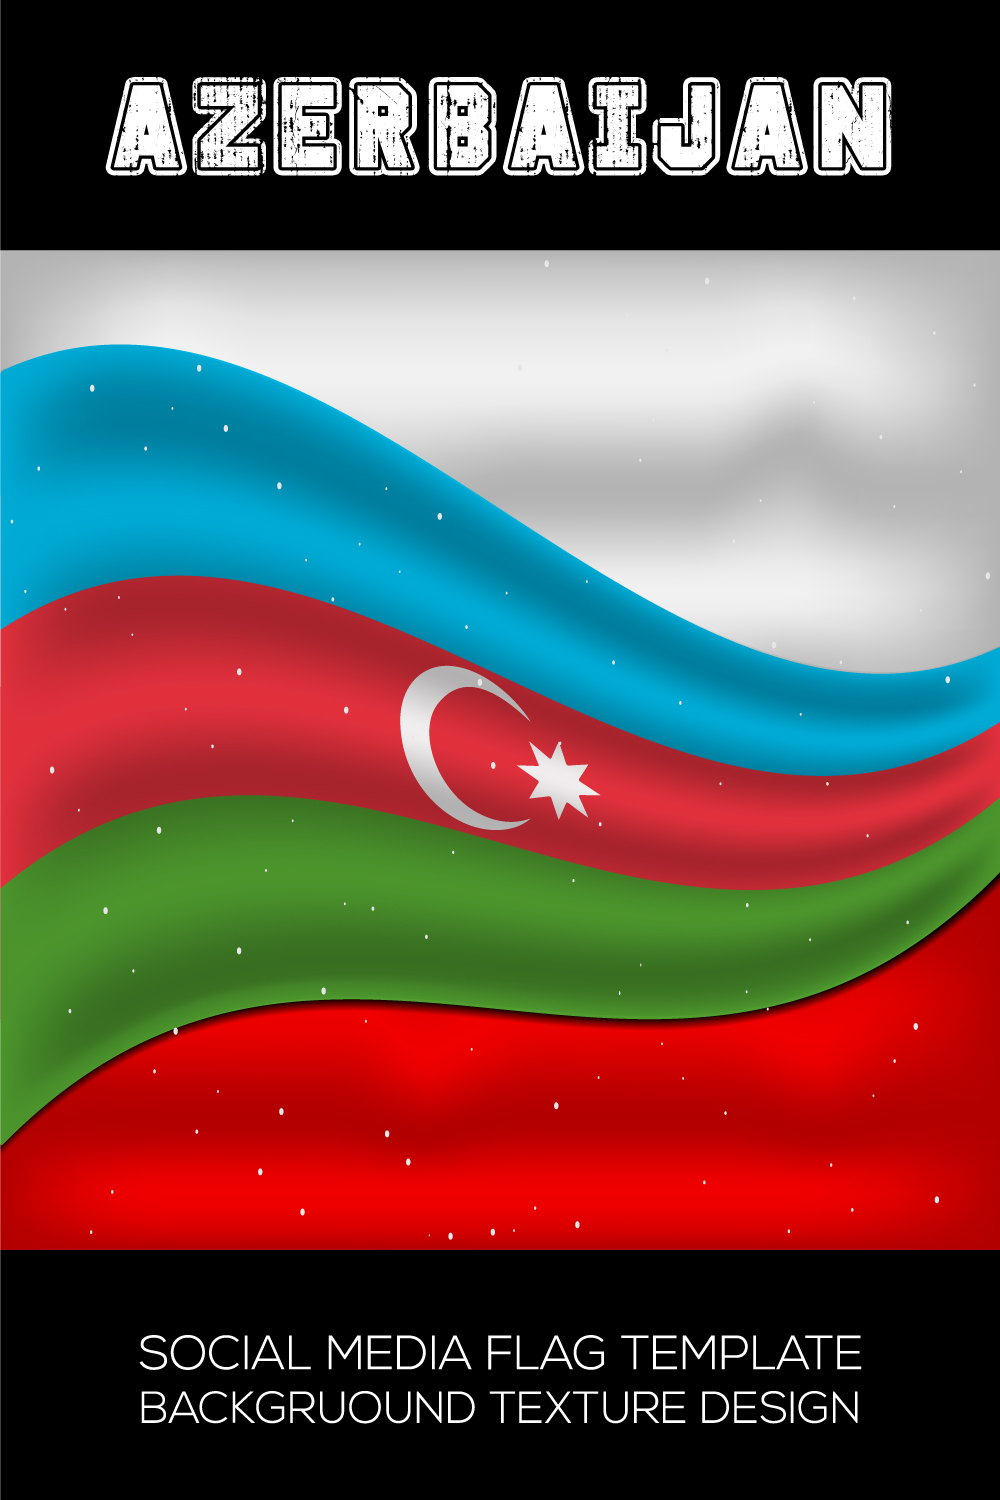 Gorgeous image of the flag of Azerbaijan.